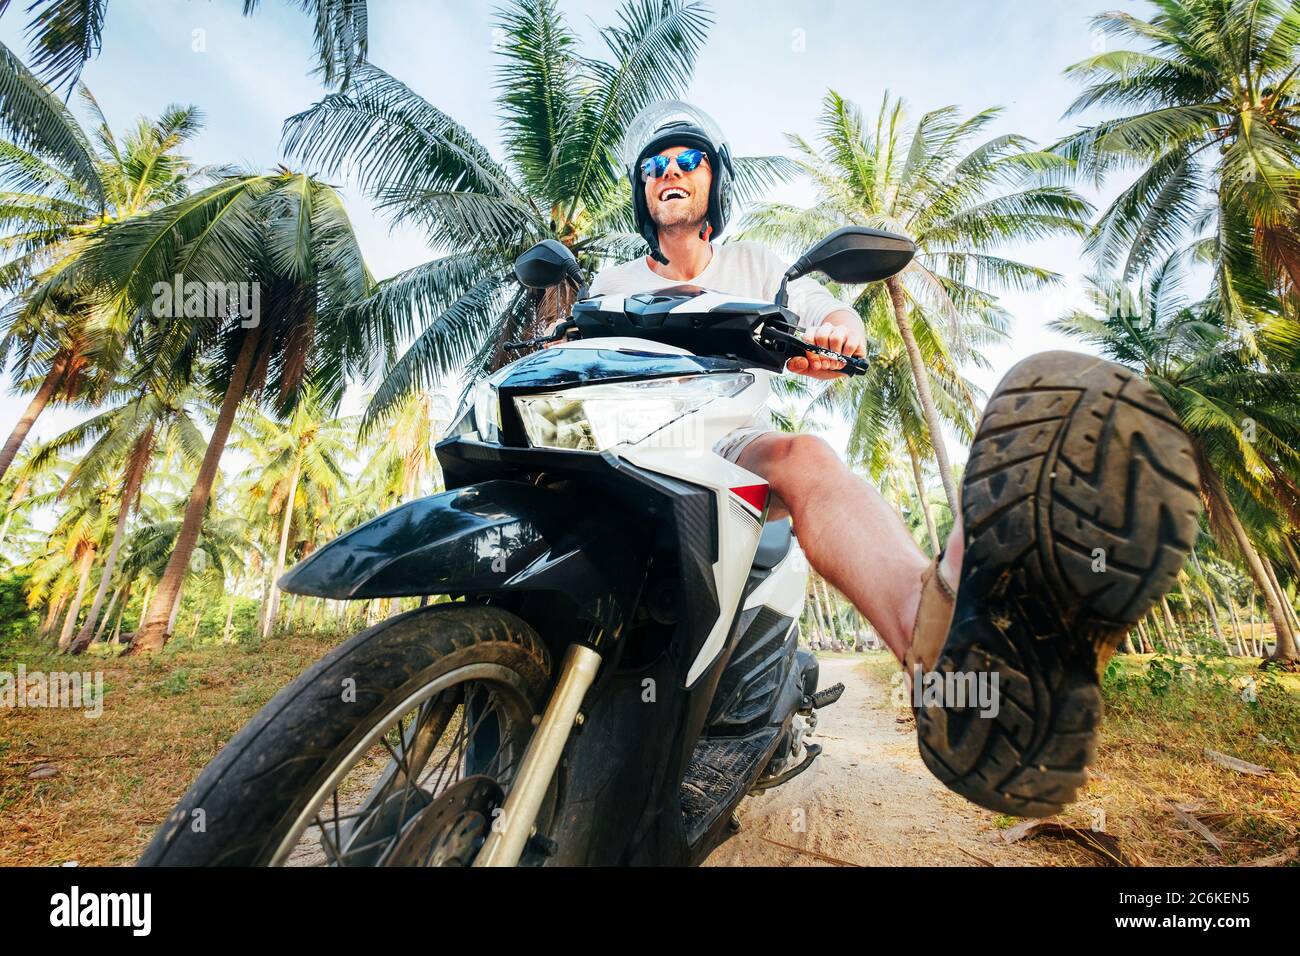 Mann in sicheren Helm Reiten Motorrad im Dschungel. Exotisches Urlaubskonzept. Stockfoto